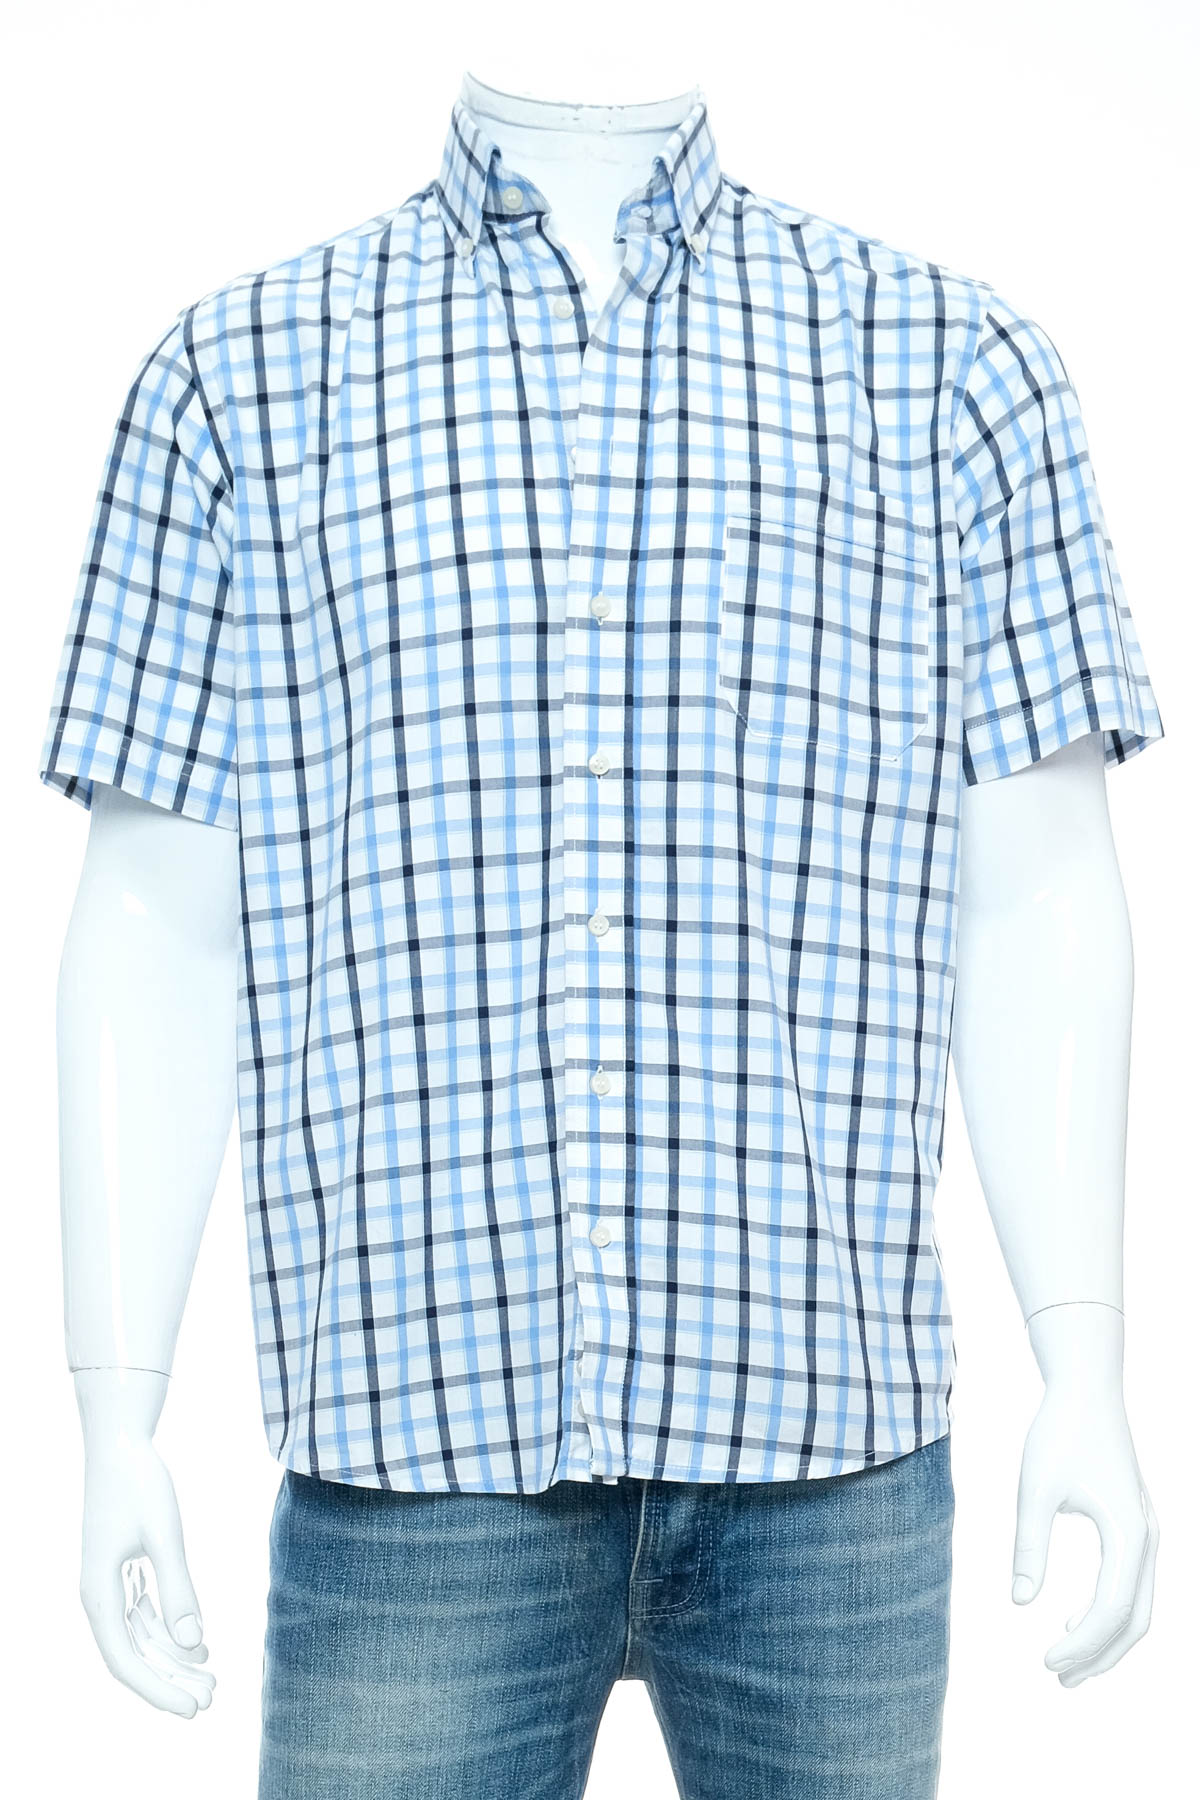 Ανδρικό πουκάμισο - C.Comberti - 0